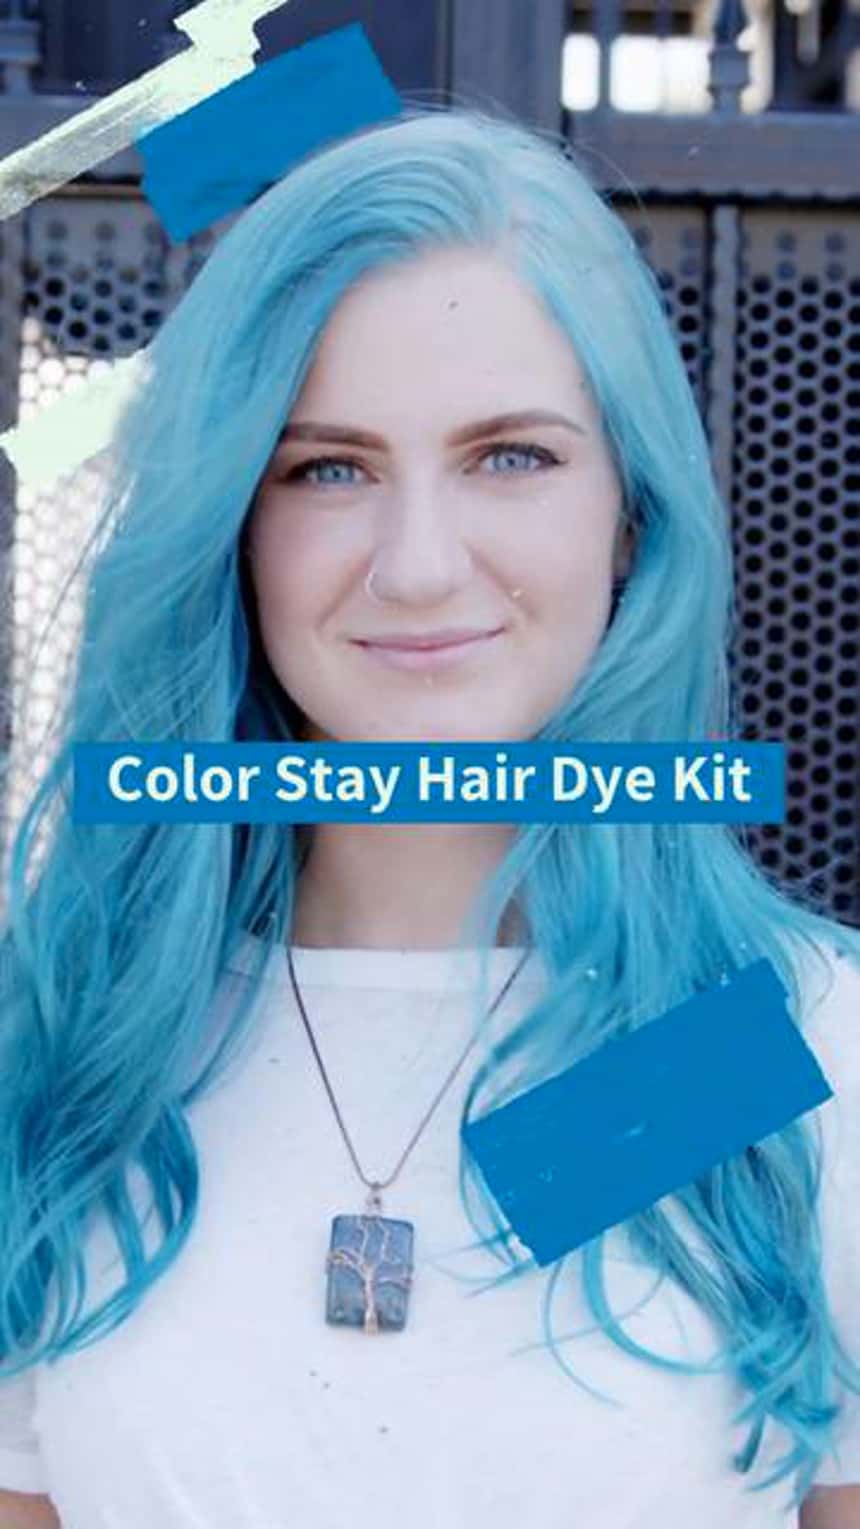 Demostración de un producto en TikTok de una persona con el pelo azul. El texto de la imagen dice “Kit para teñir cabello Colorstay”